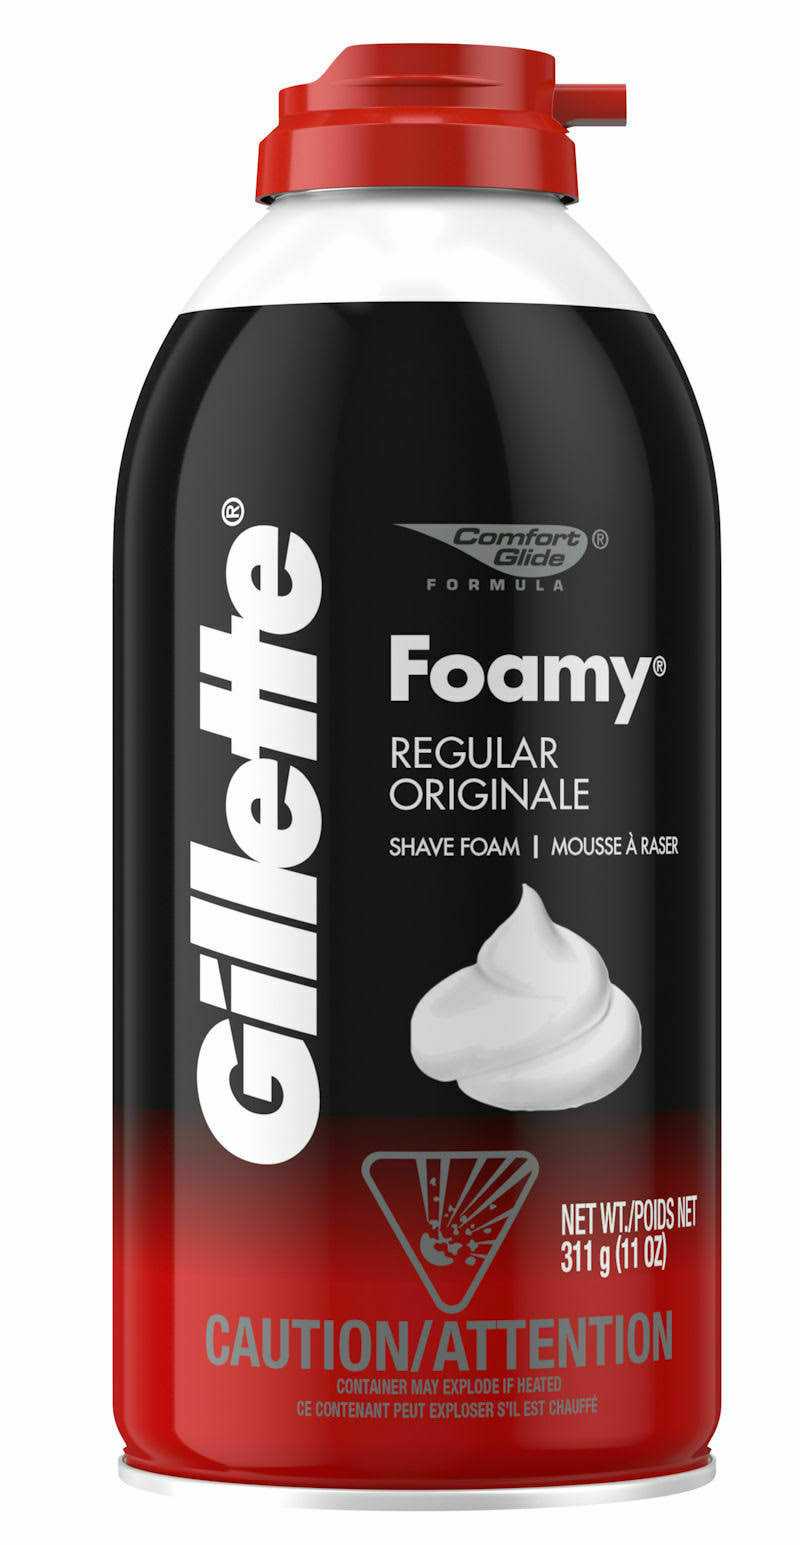 Gillette Foamy Regular Shave Foam - 11oz